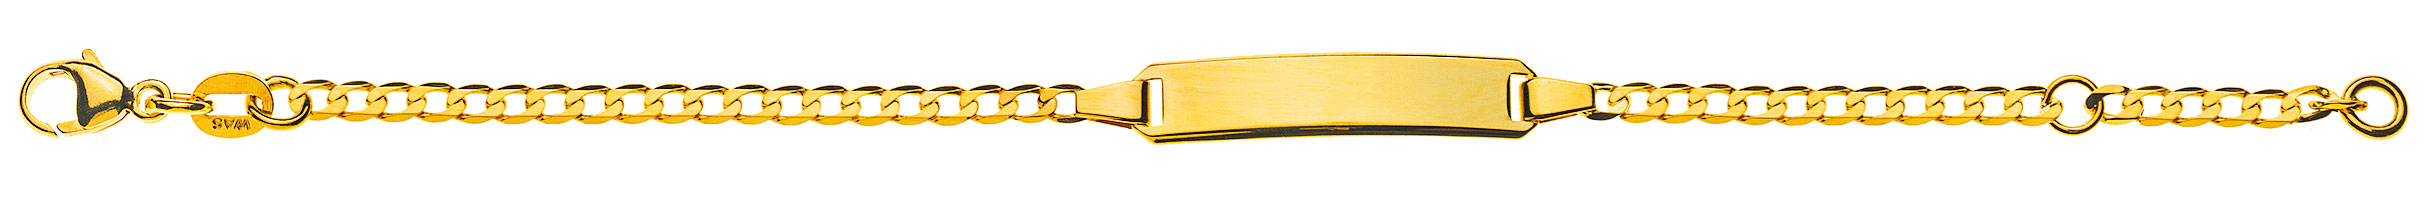 AURONOS Prestige ID-Bracelet 18k Gelbgold Panzerkette diamantiert 18cm